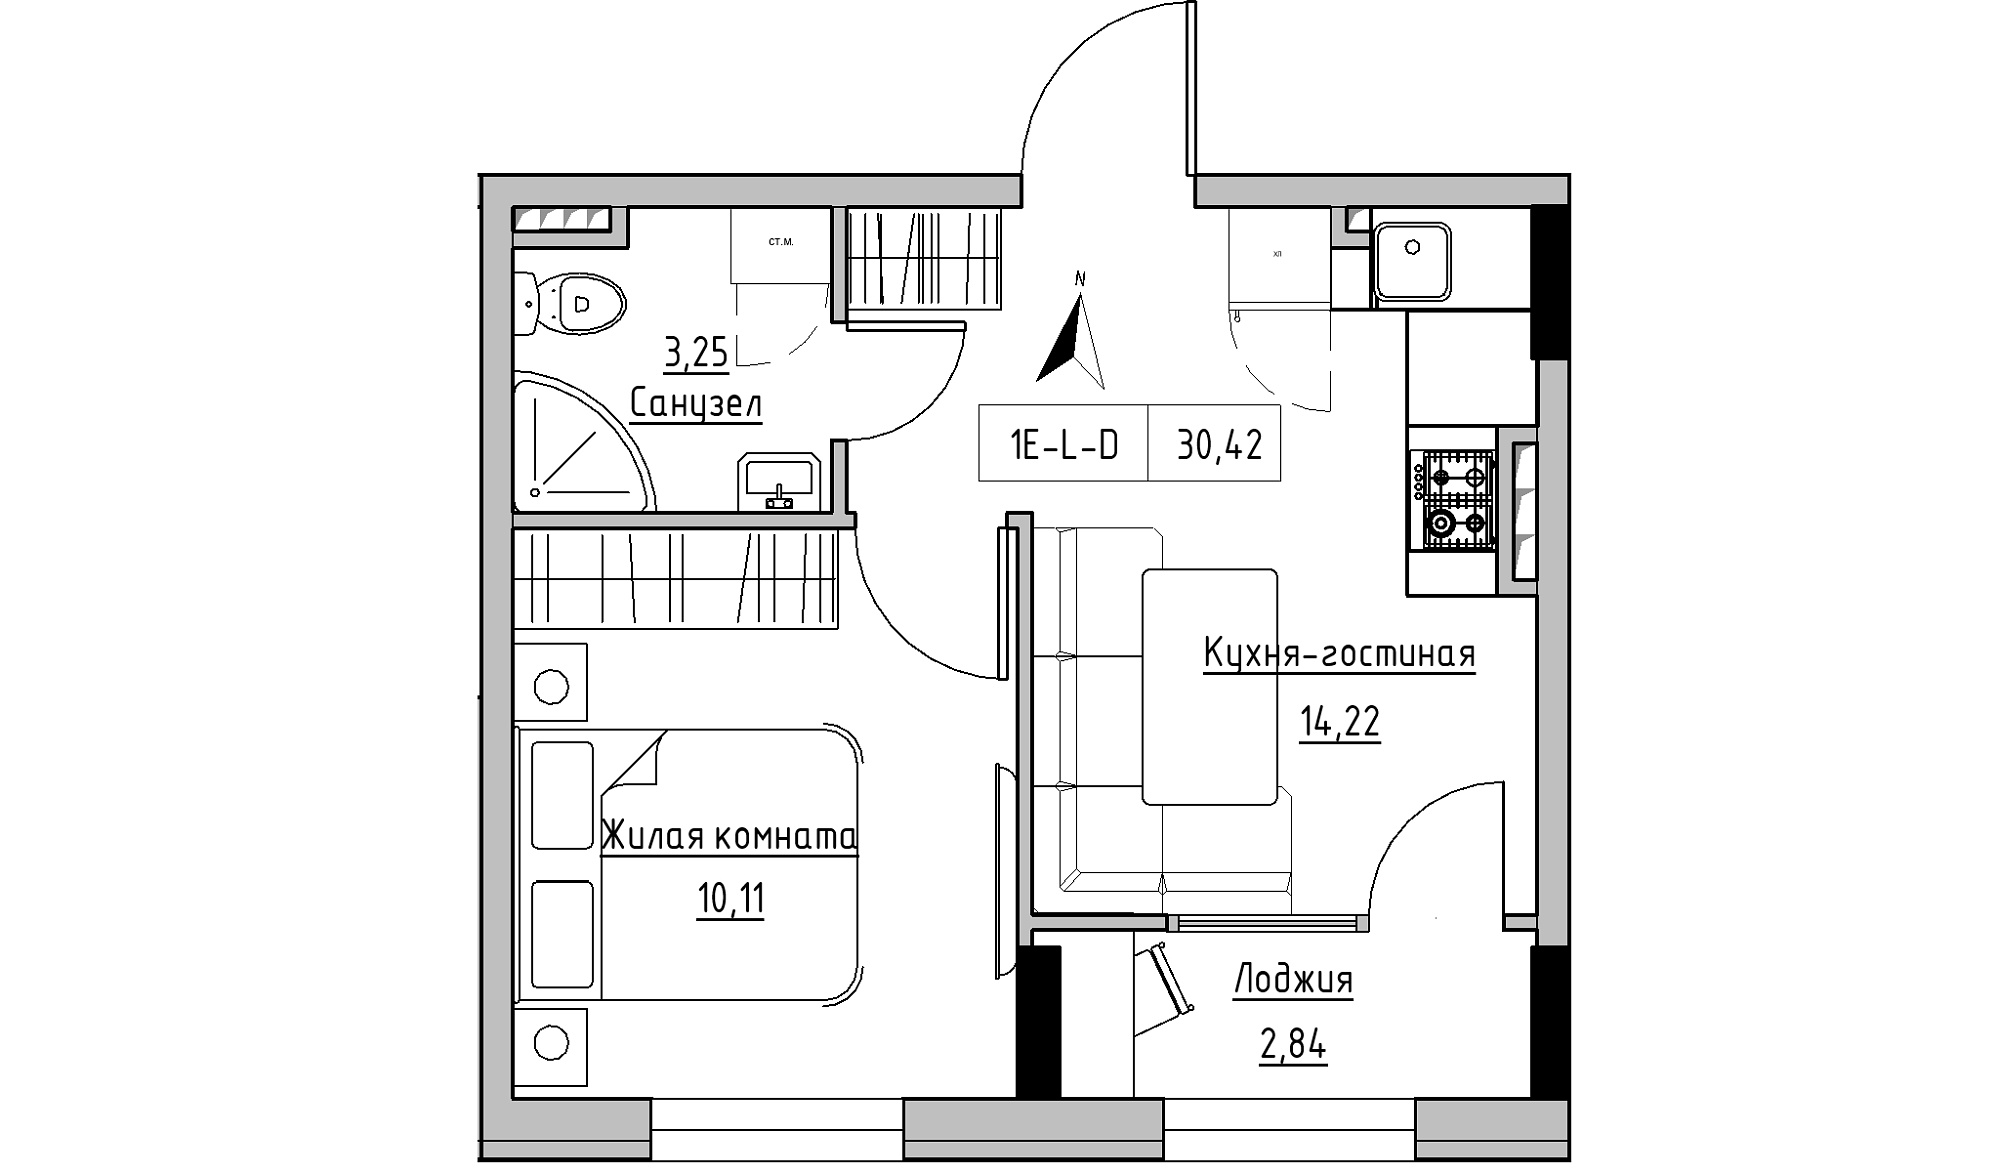 Планировка 1-к квартира площей 30.42м2, KS-025-03/0013.